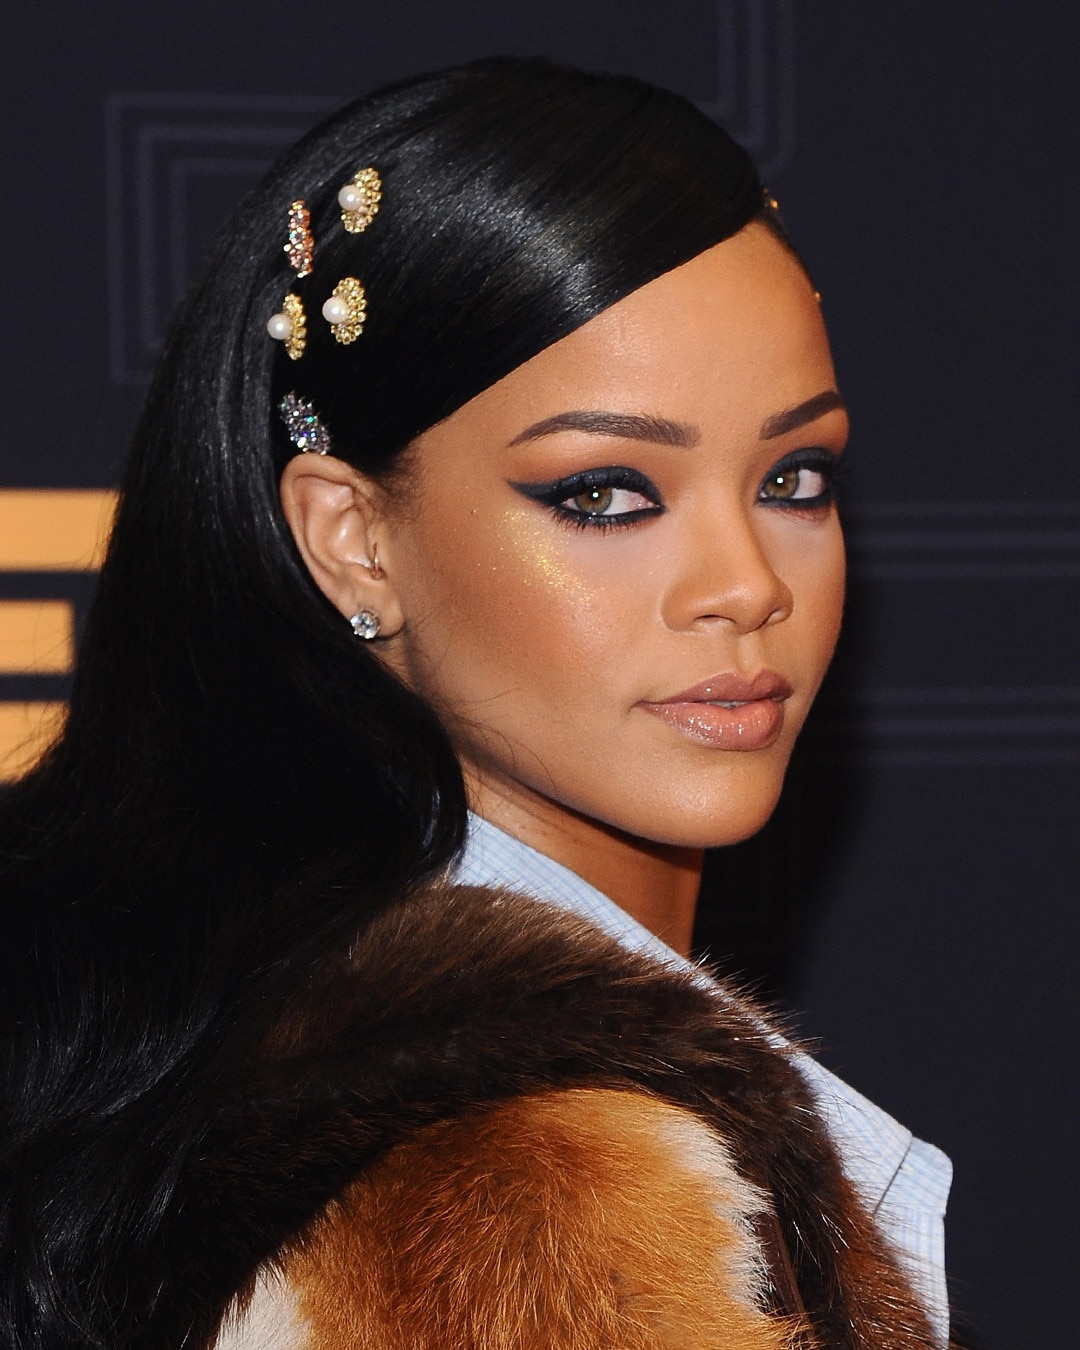 ESC: Hair Accessories, Rihanna